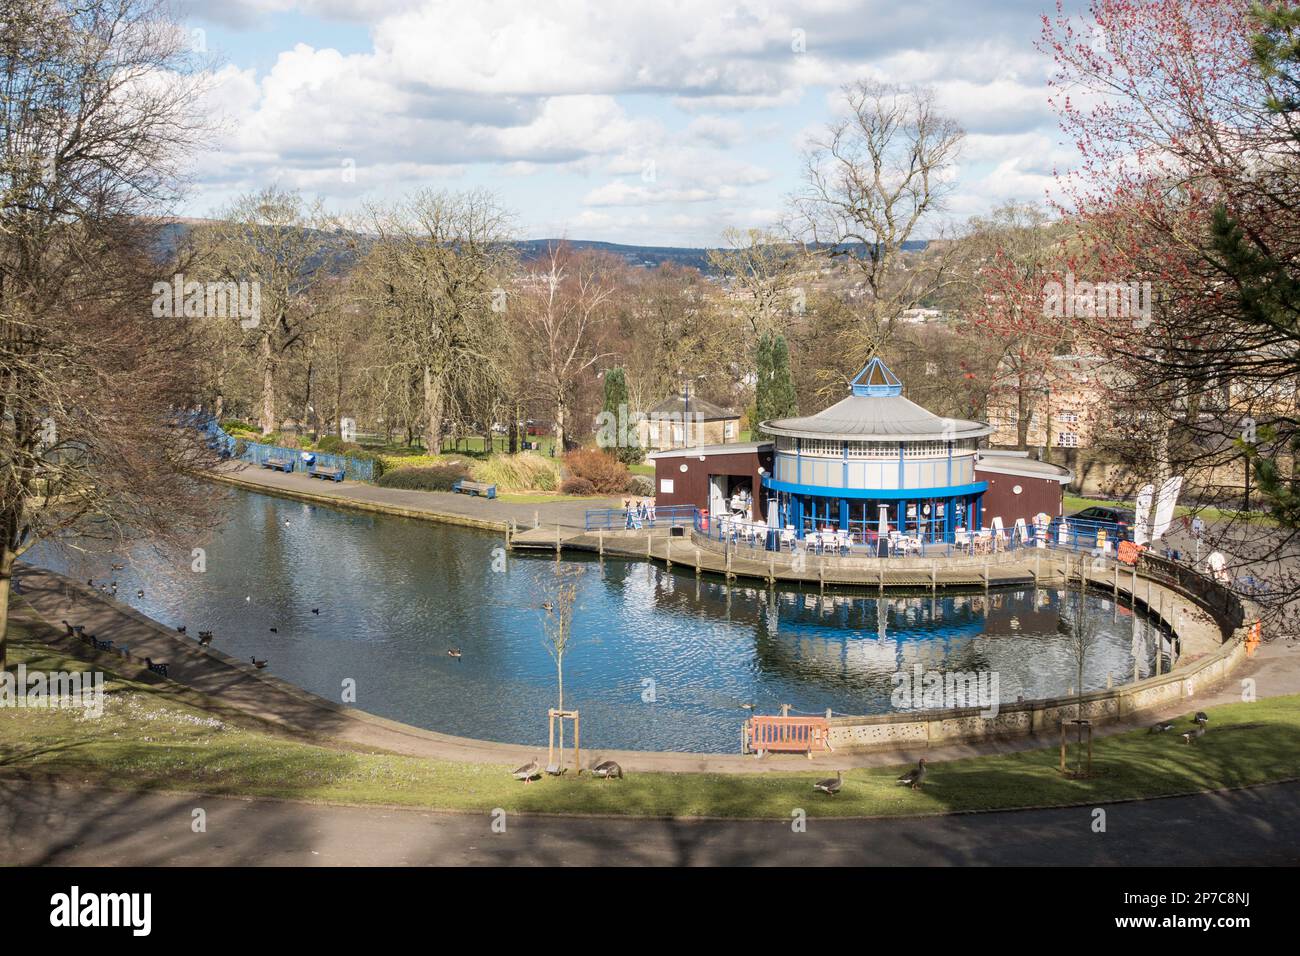 Le lac et le café de plaisance de Lister Park, Bradford, West Yorkshire, Angleterre, Royaume-Uni Banque D'Images